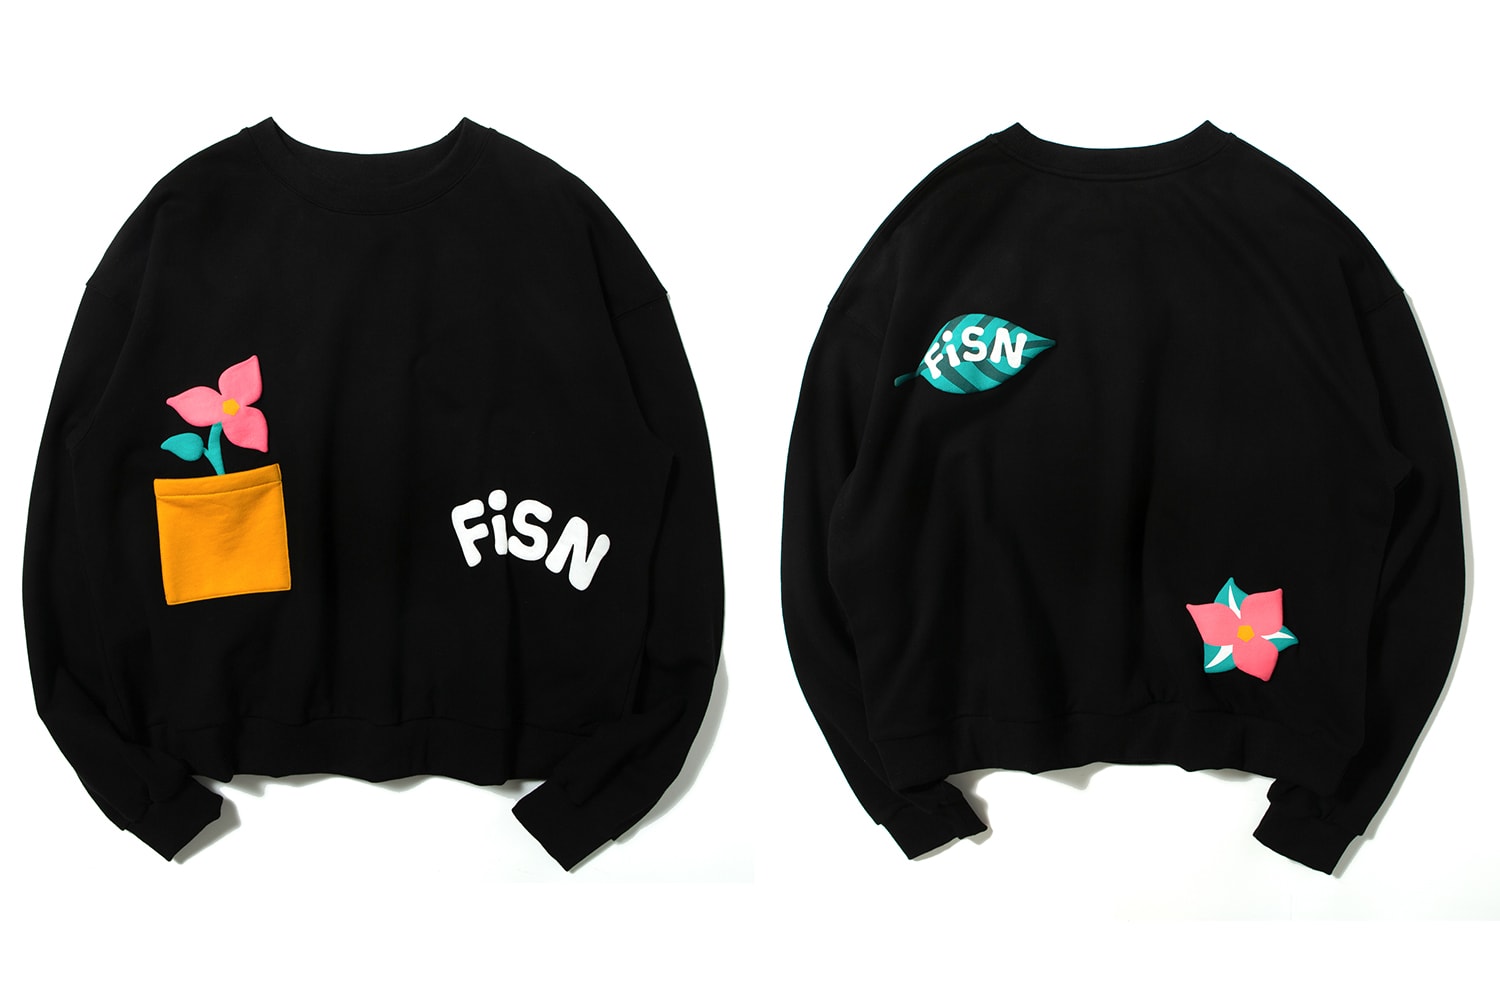 FiSN Drop 1.0 Release T shirt Sweater Polo Socks FUTURE iS NOW osbbat oallery